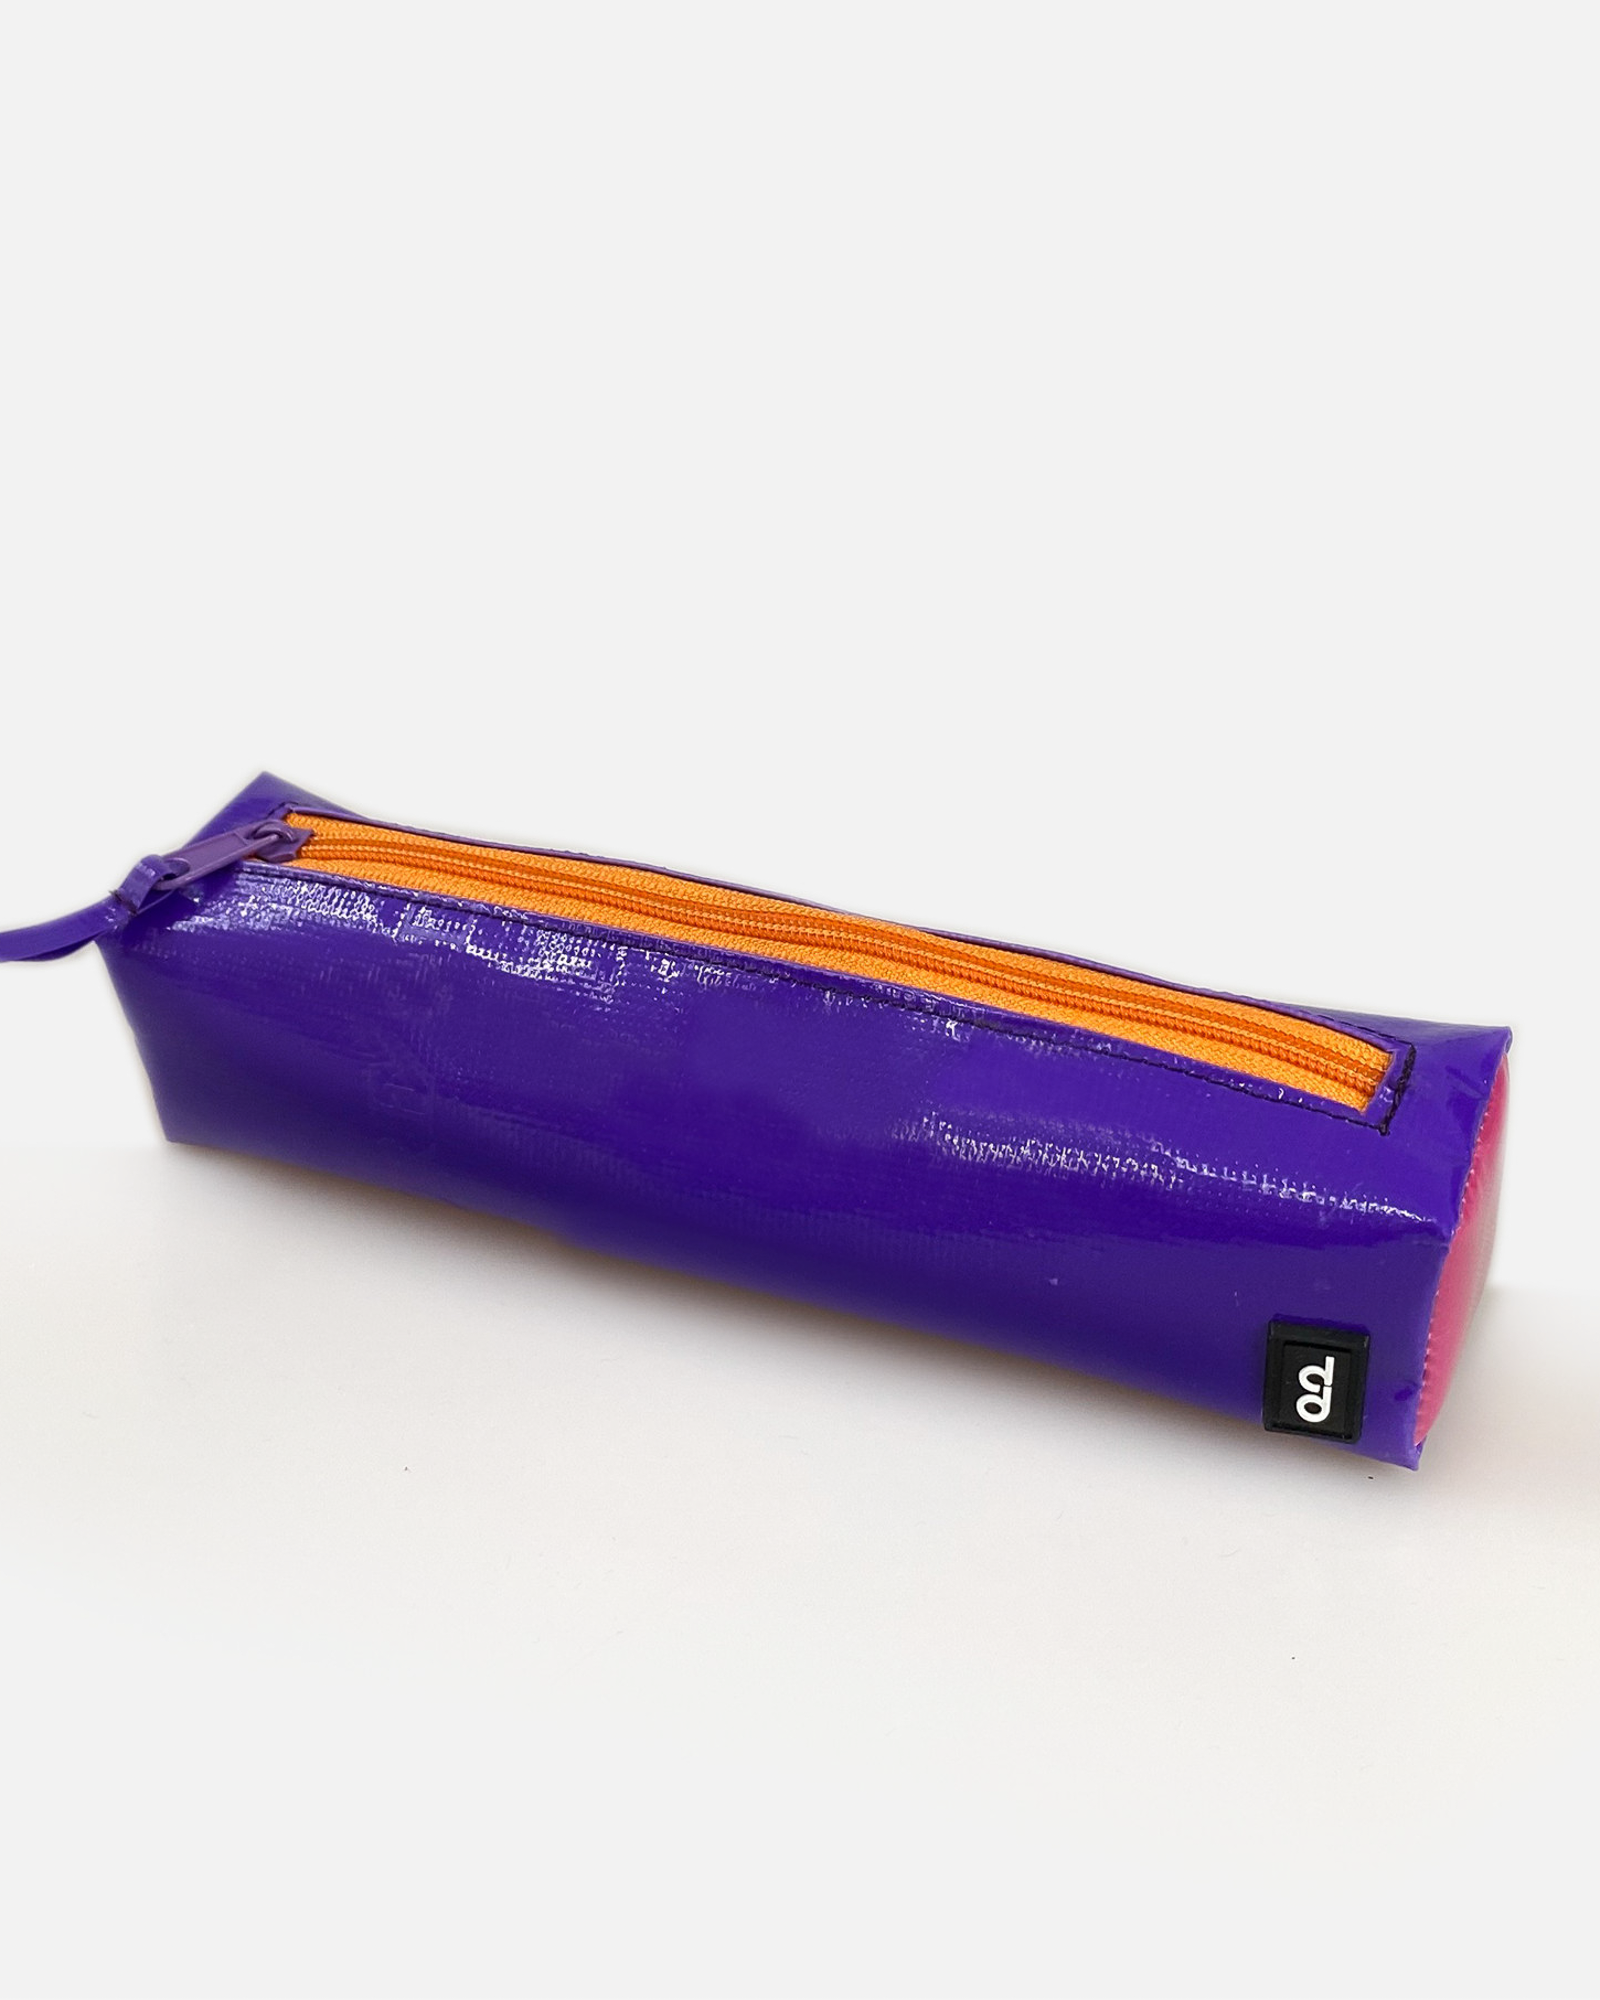  Used Tarp Purple Pencil Case 01 - Hộp Đựng Bút Chì Tím 01 